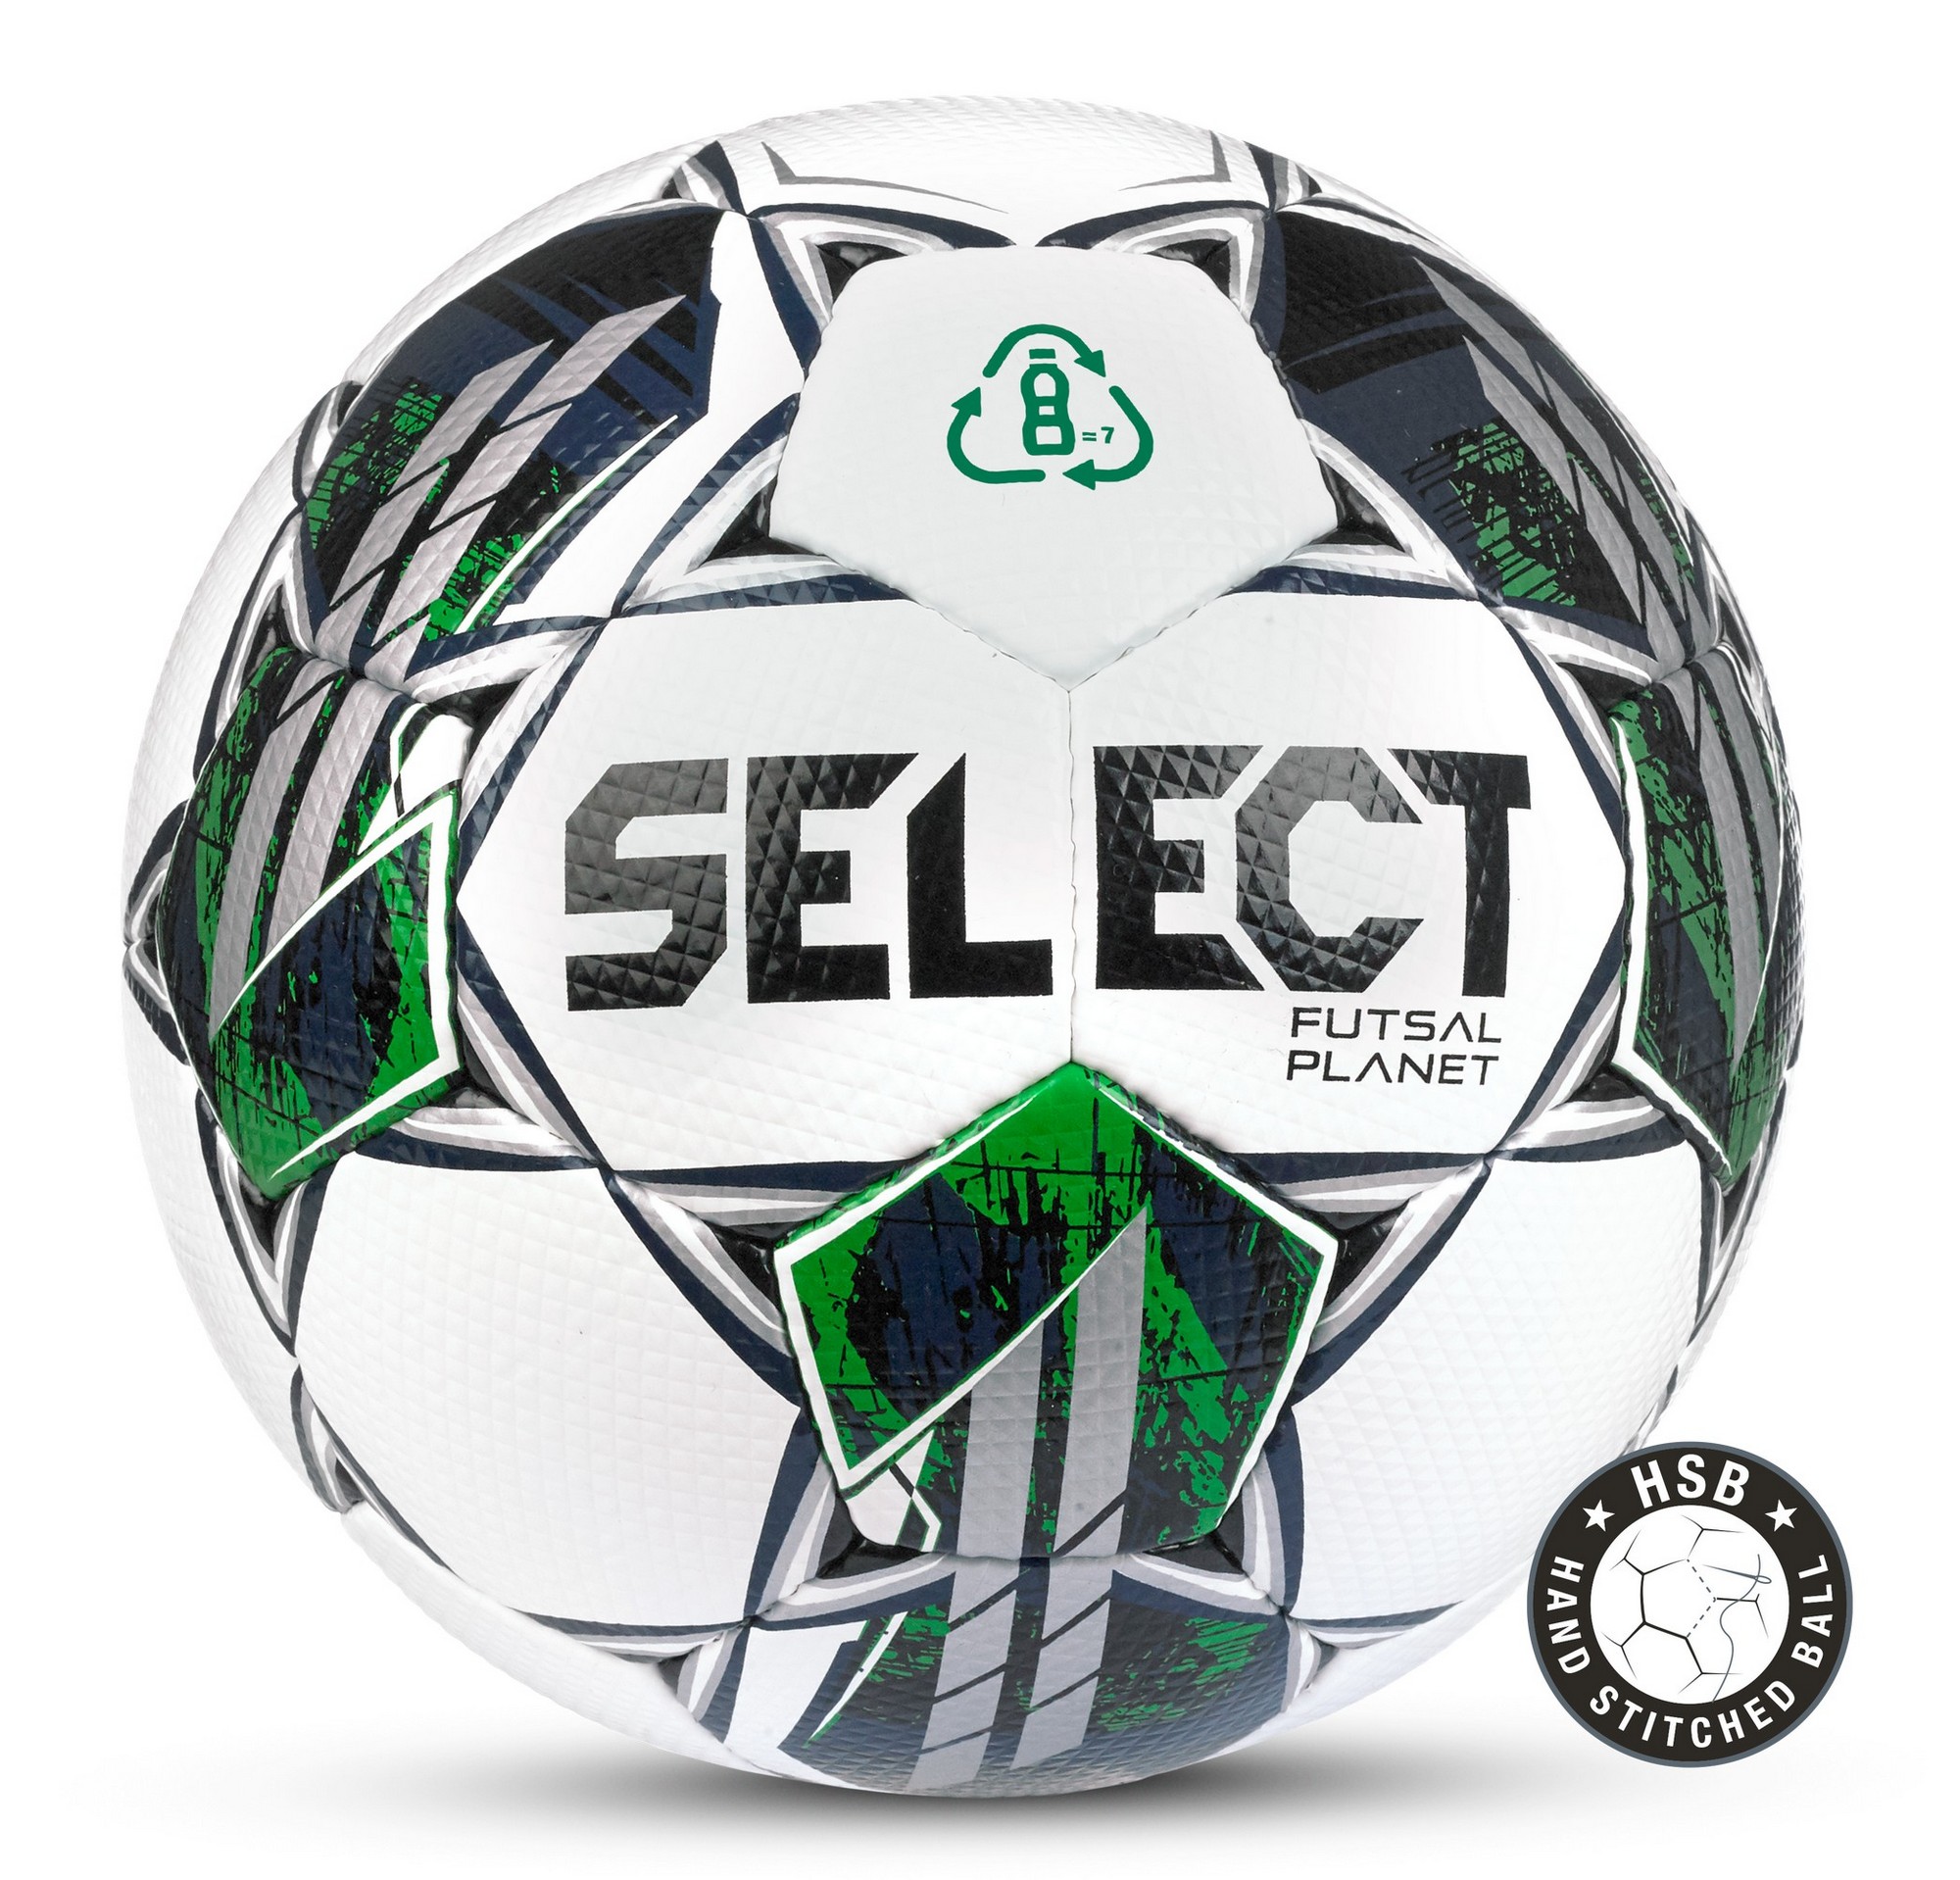   Select Futsal Planet v22 FIFA Basic1033460004